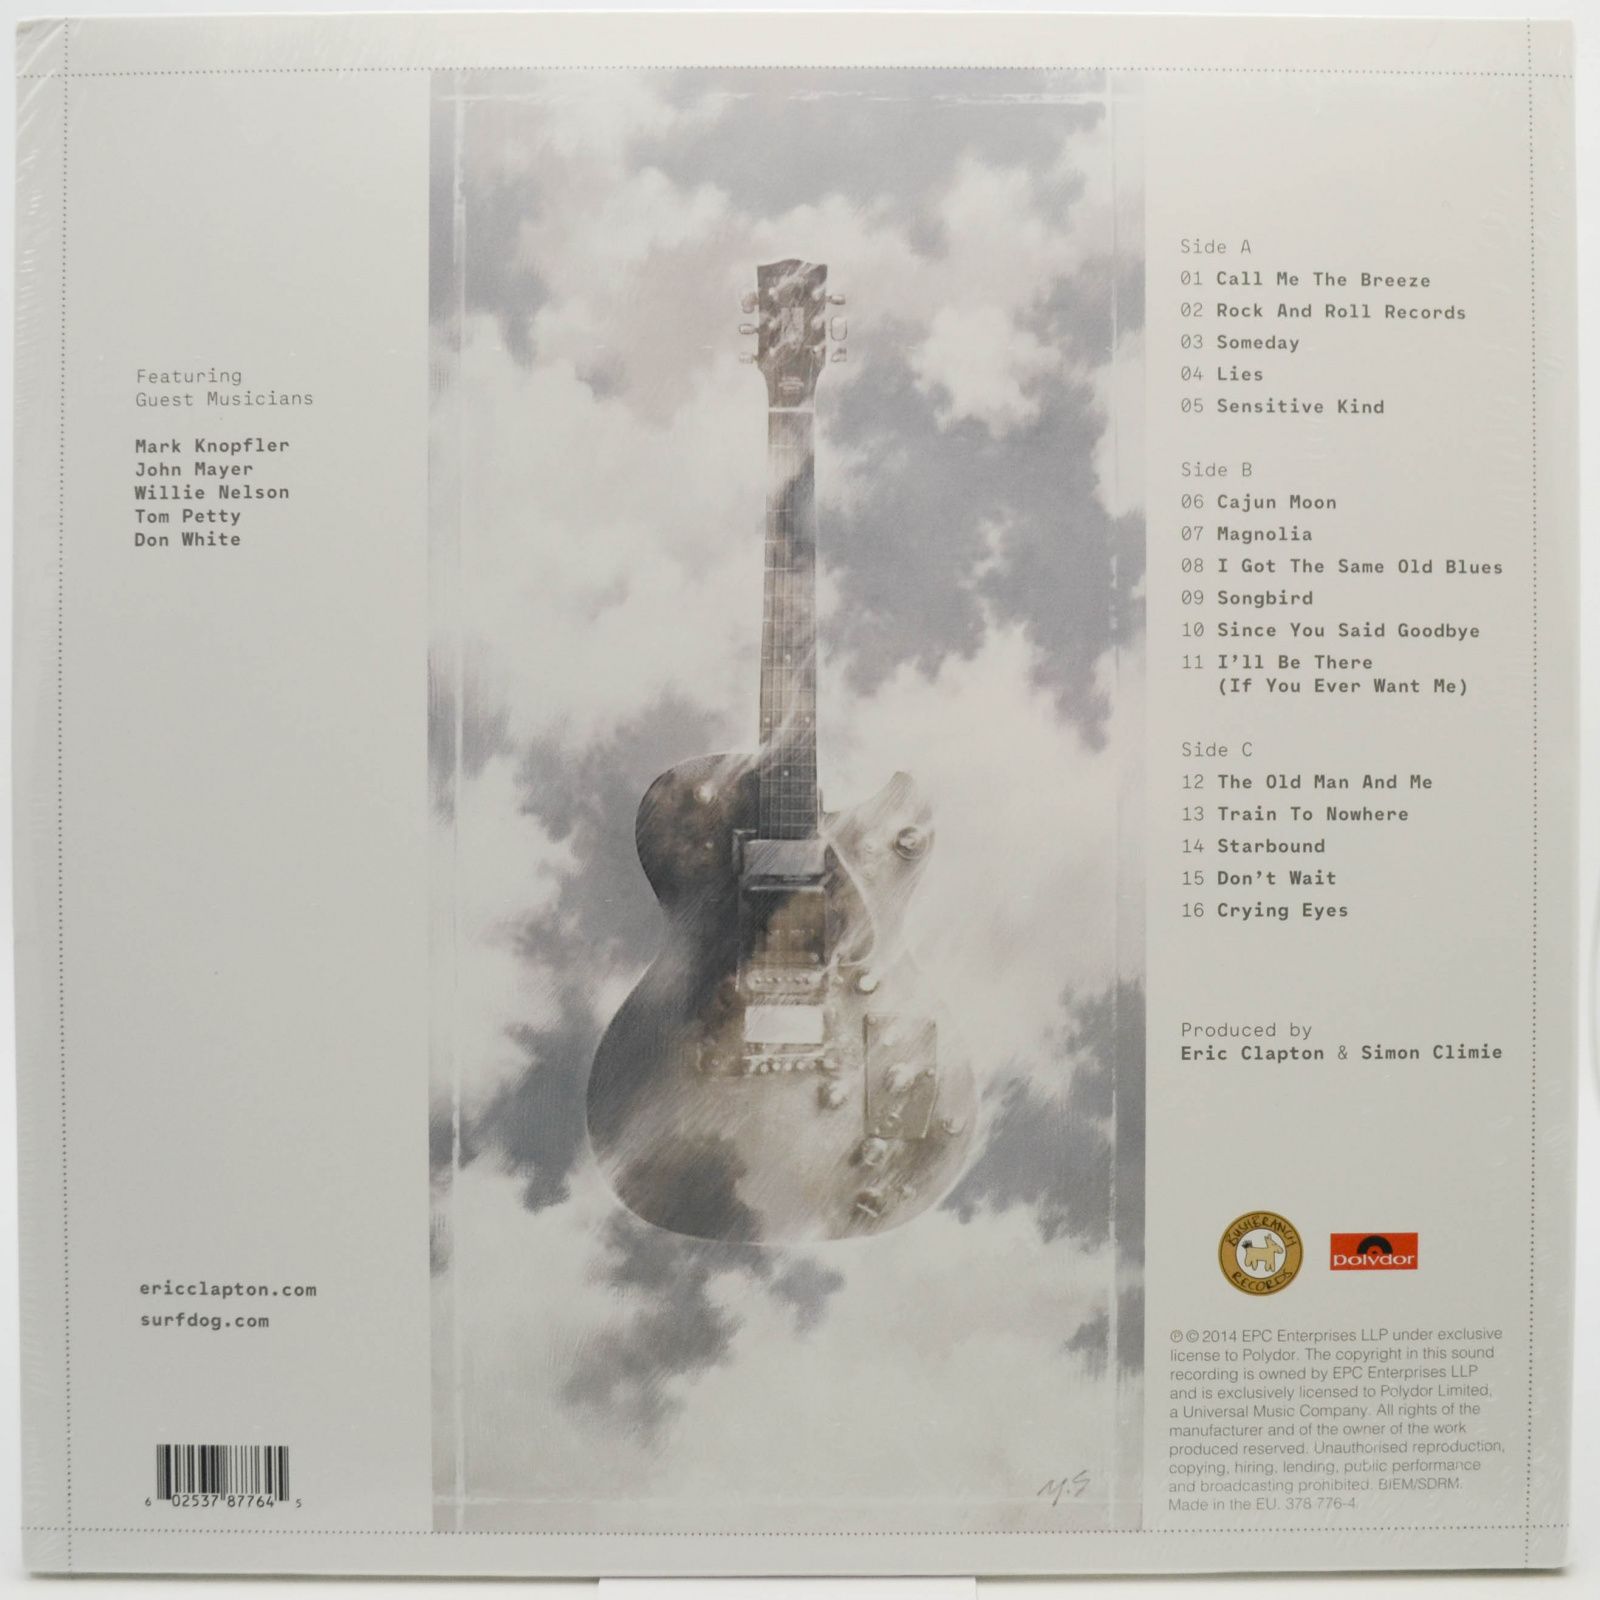 Eric Clapton & Friends — The Breeze (An Appreciation Of JJ Cale) (2LP), 2014